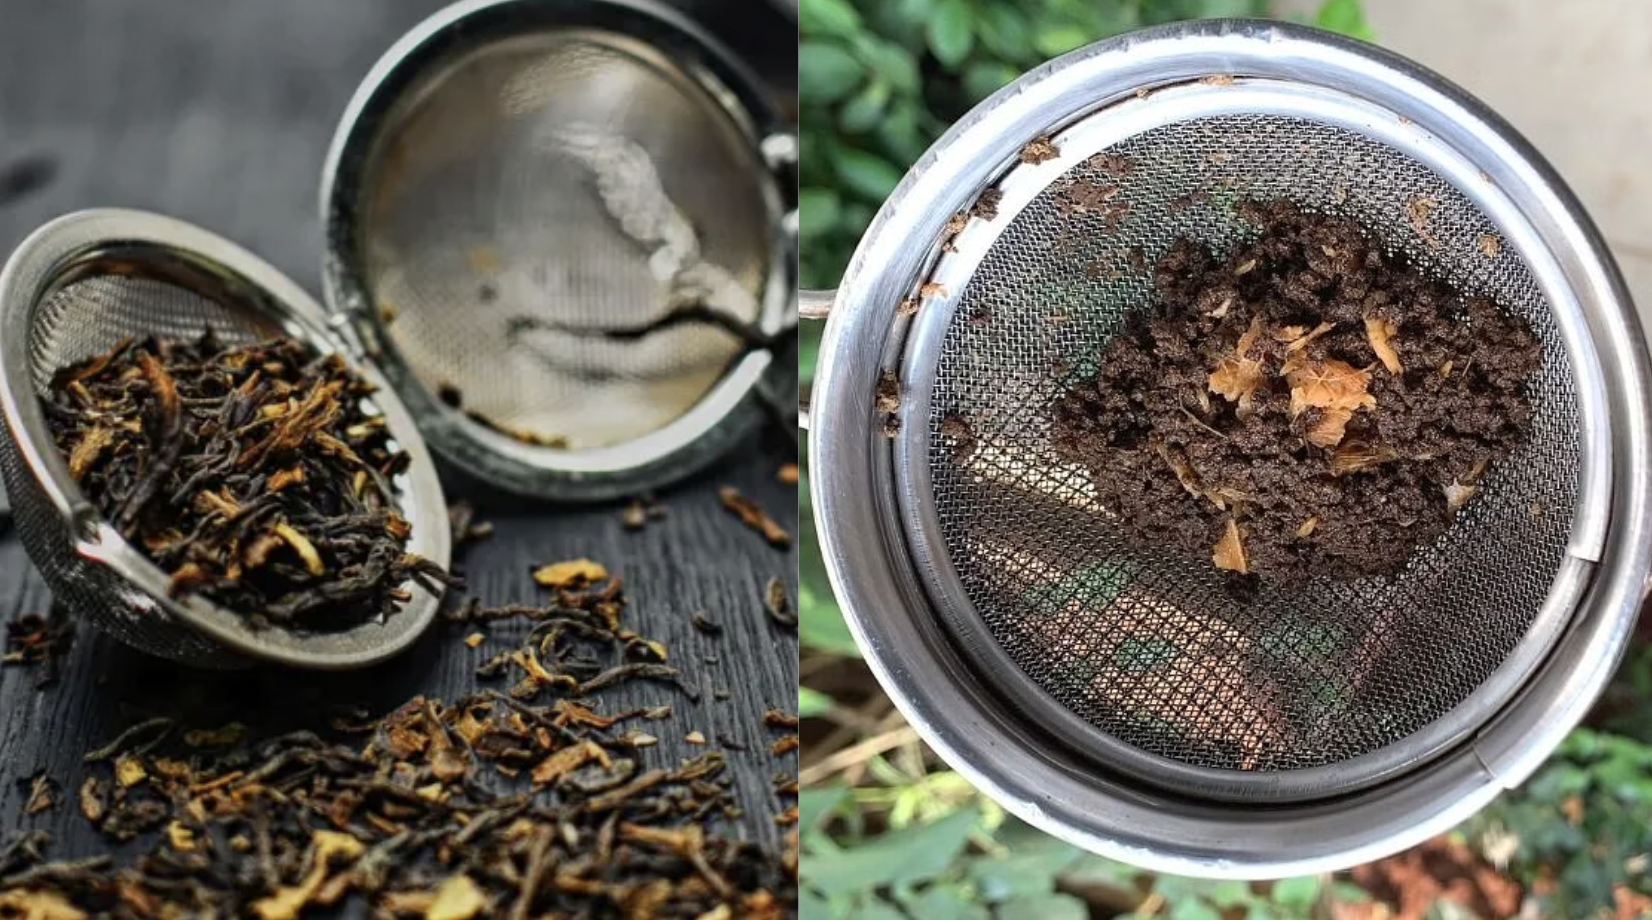 tea wastage leaves uses